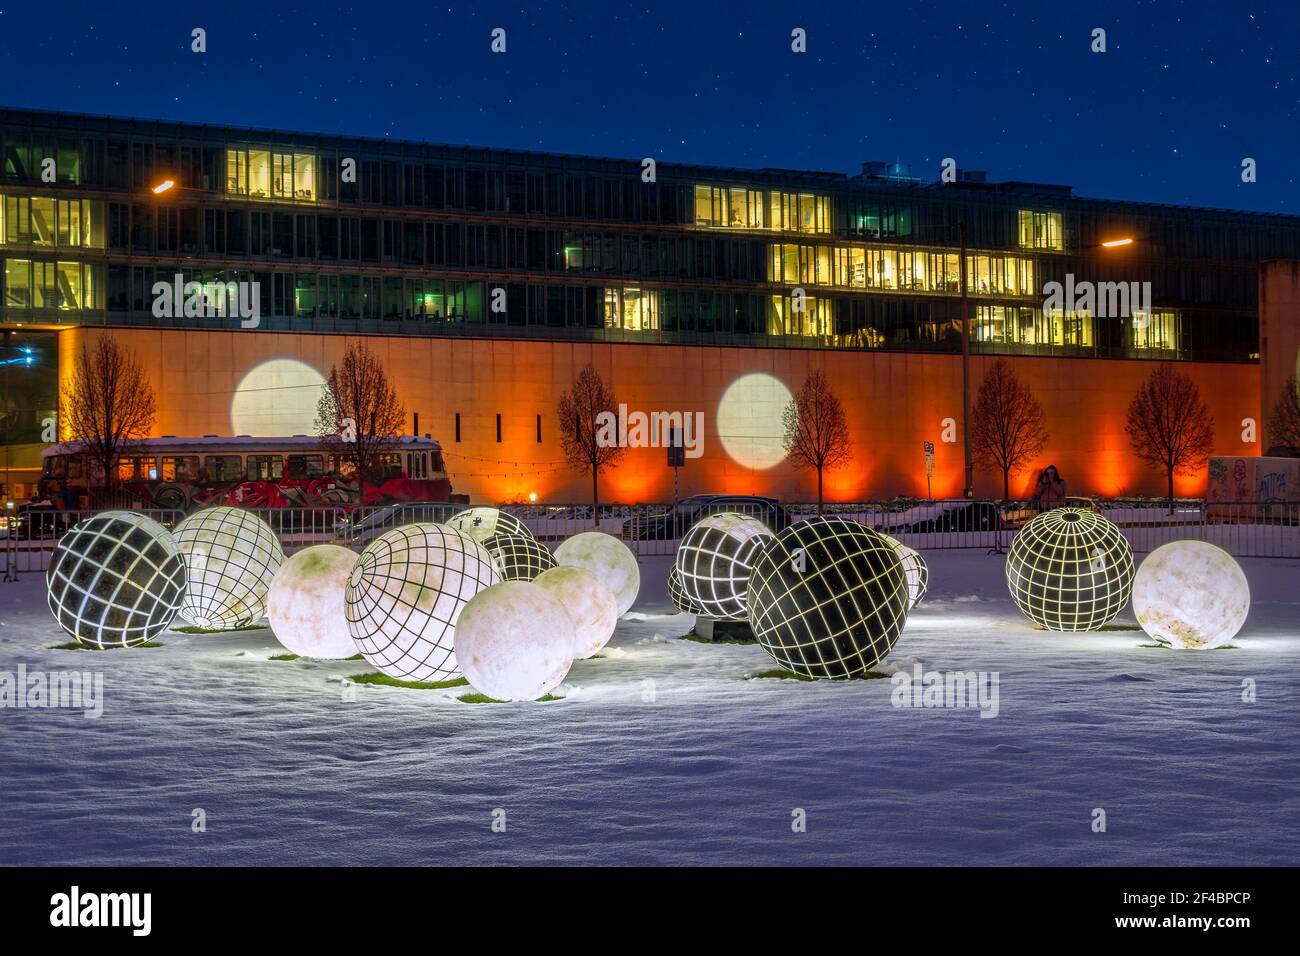 Munich s'allume, installation de lumière dans le quartier artistique, Alte Pinakothek, Munich, Bavière, Allemagne, Europe Banque D'Images